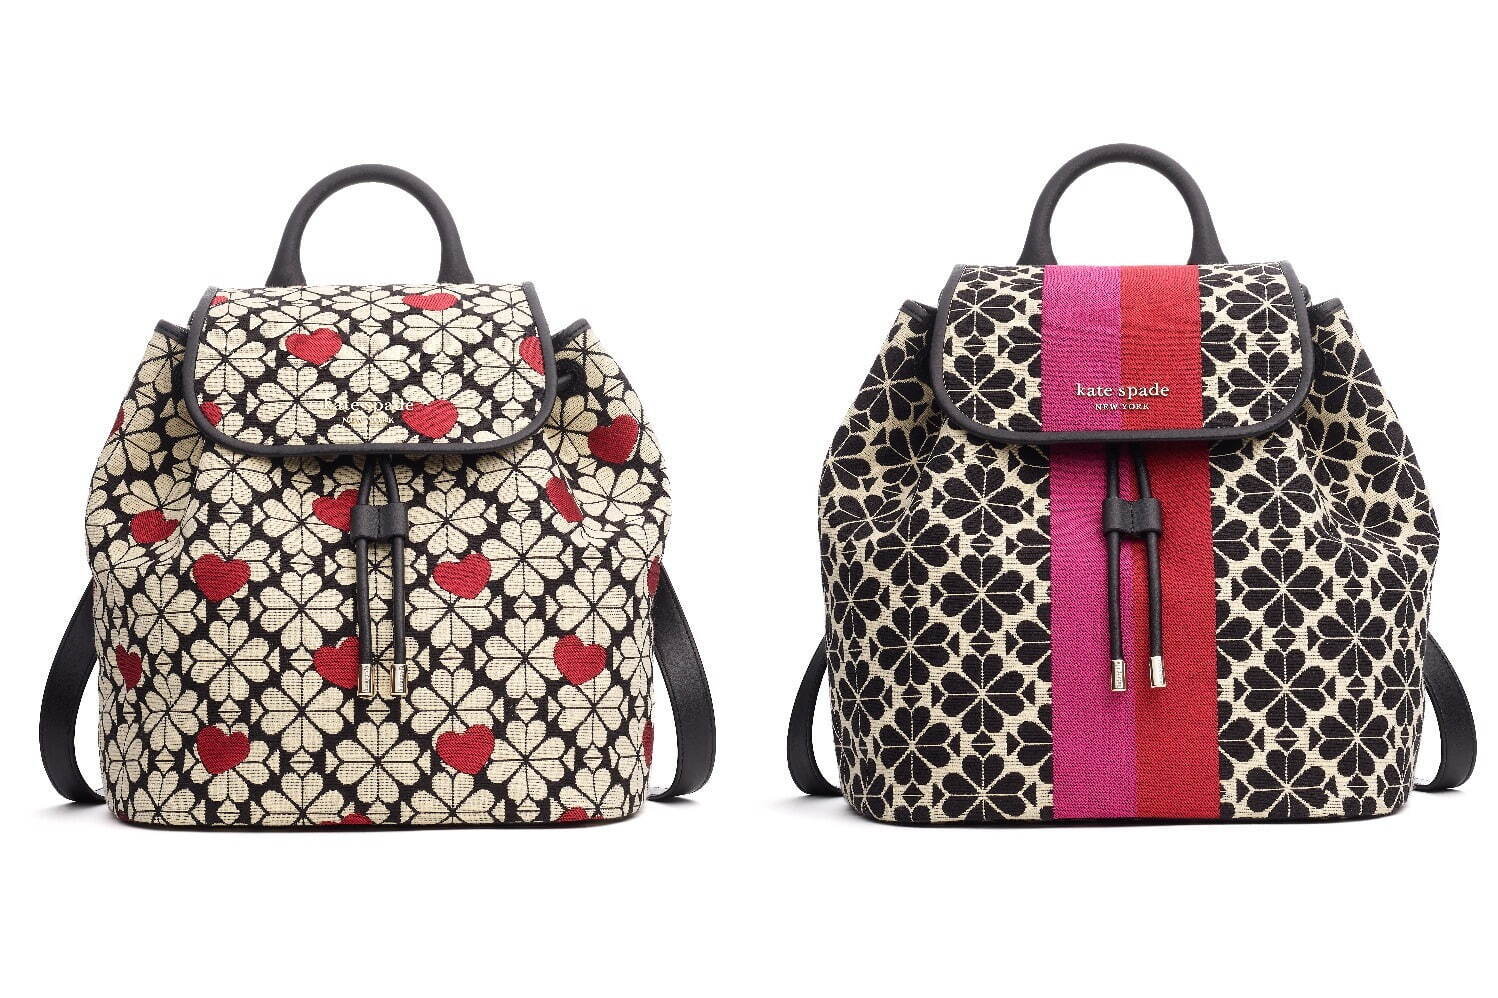 ケイト・スペード2021年秋の新作バッグ、日本限定カラーの「スペード